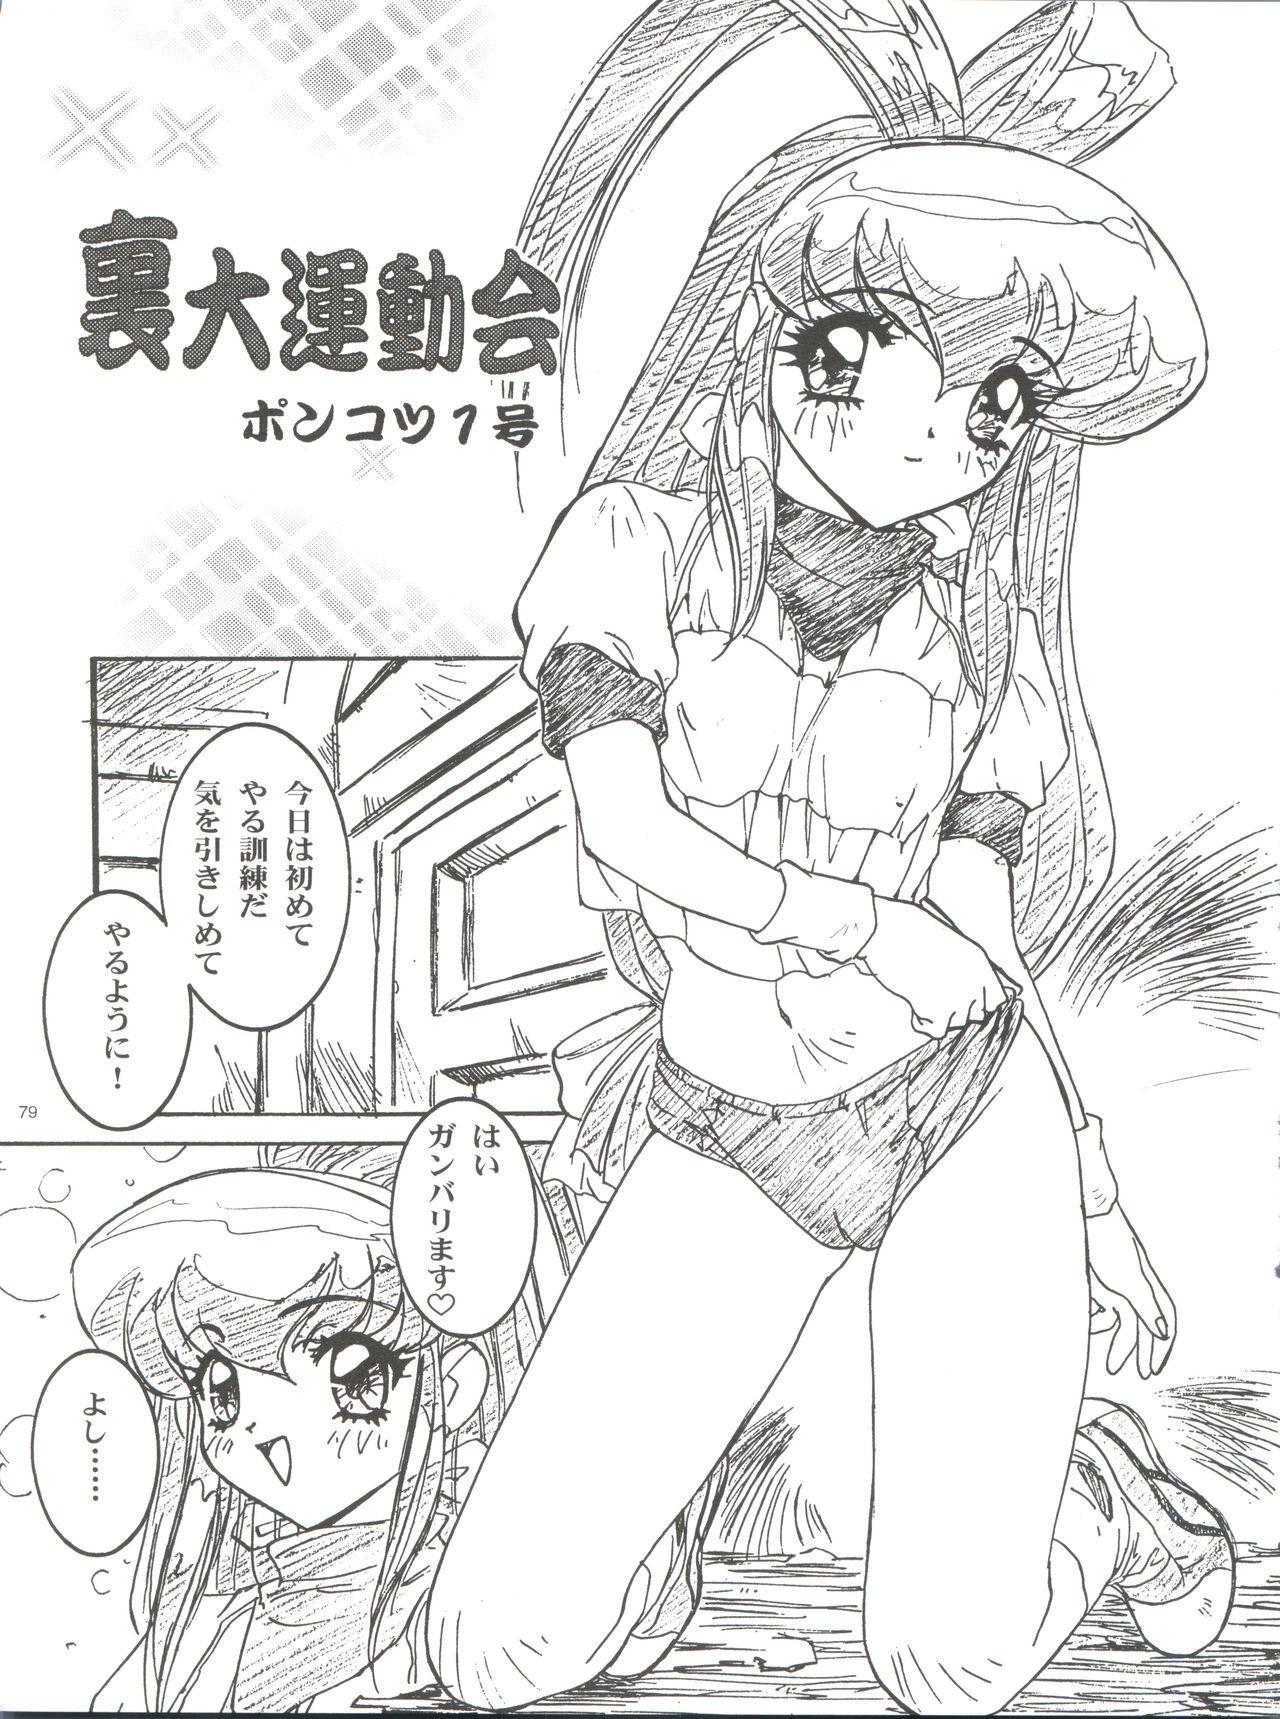 Wanpaku Anime Daihyakka Nanno Koto Jisensyuu Vol. 1 80